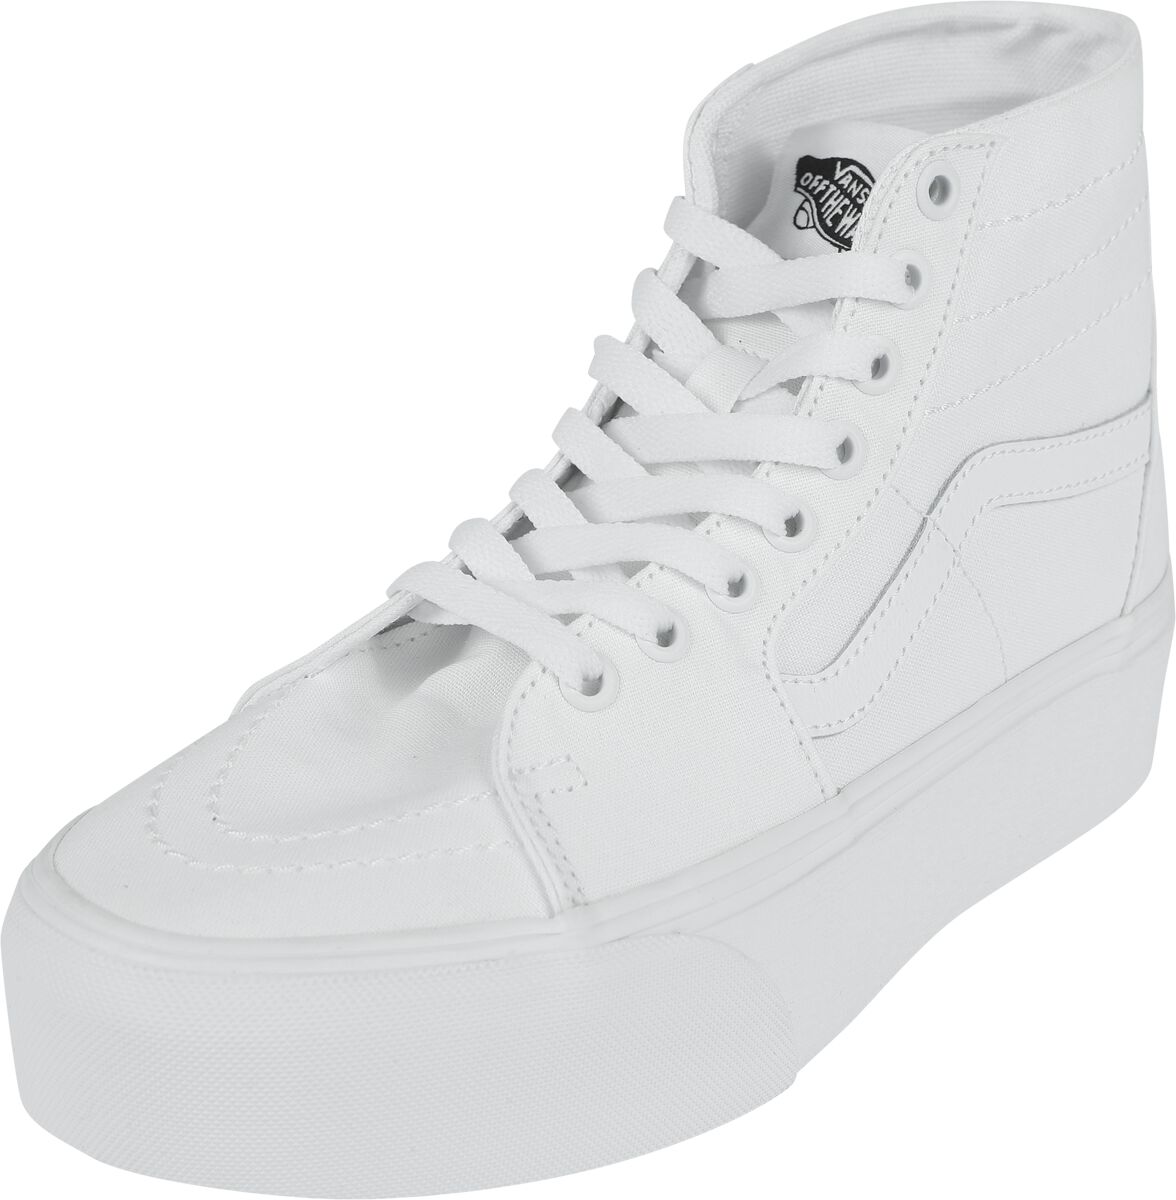 Vans Sneaker high - SK8-Hi Tapered Stackform Canvas True White - EU37 bis EU41 - für Damen - Größe EU38 - weiß